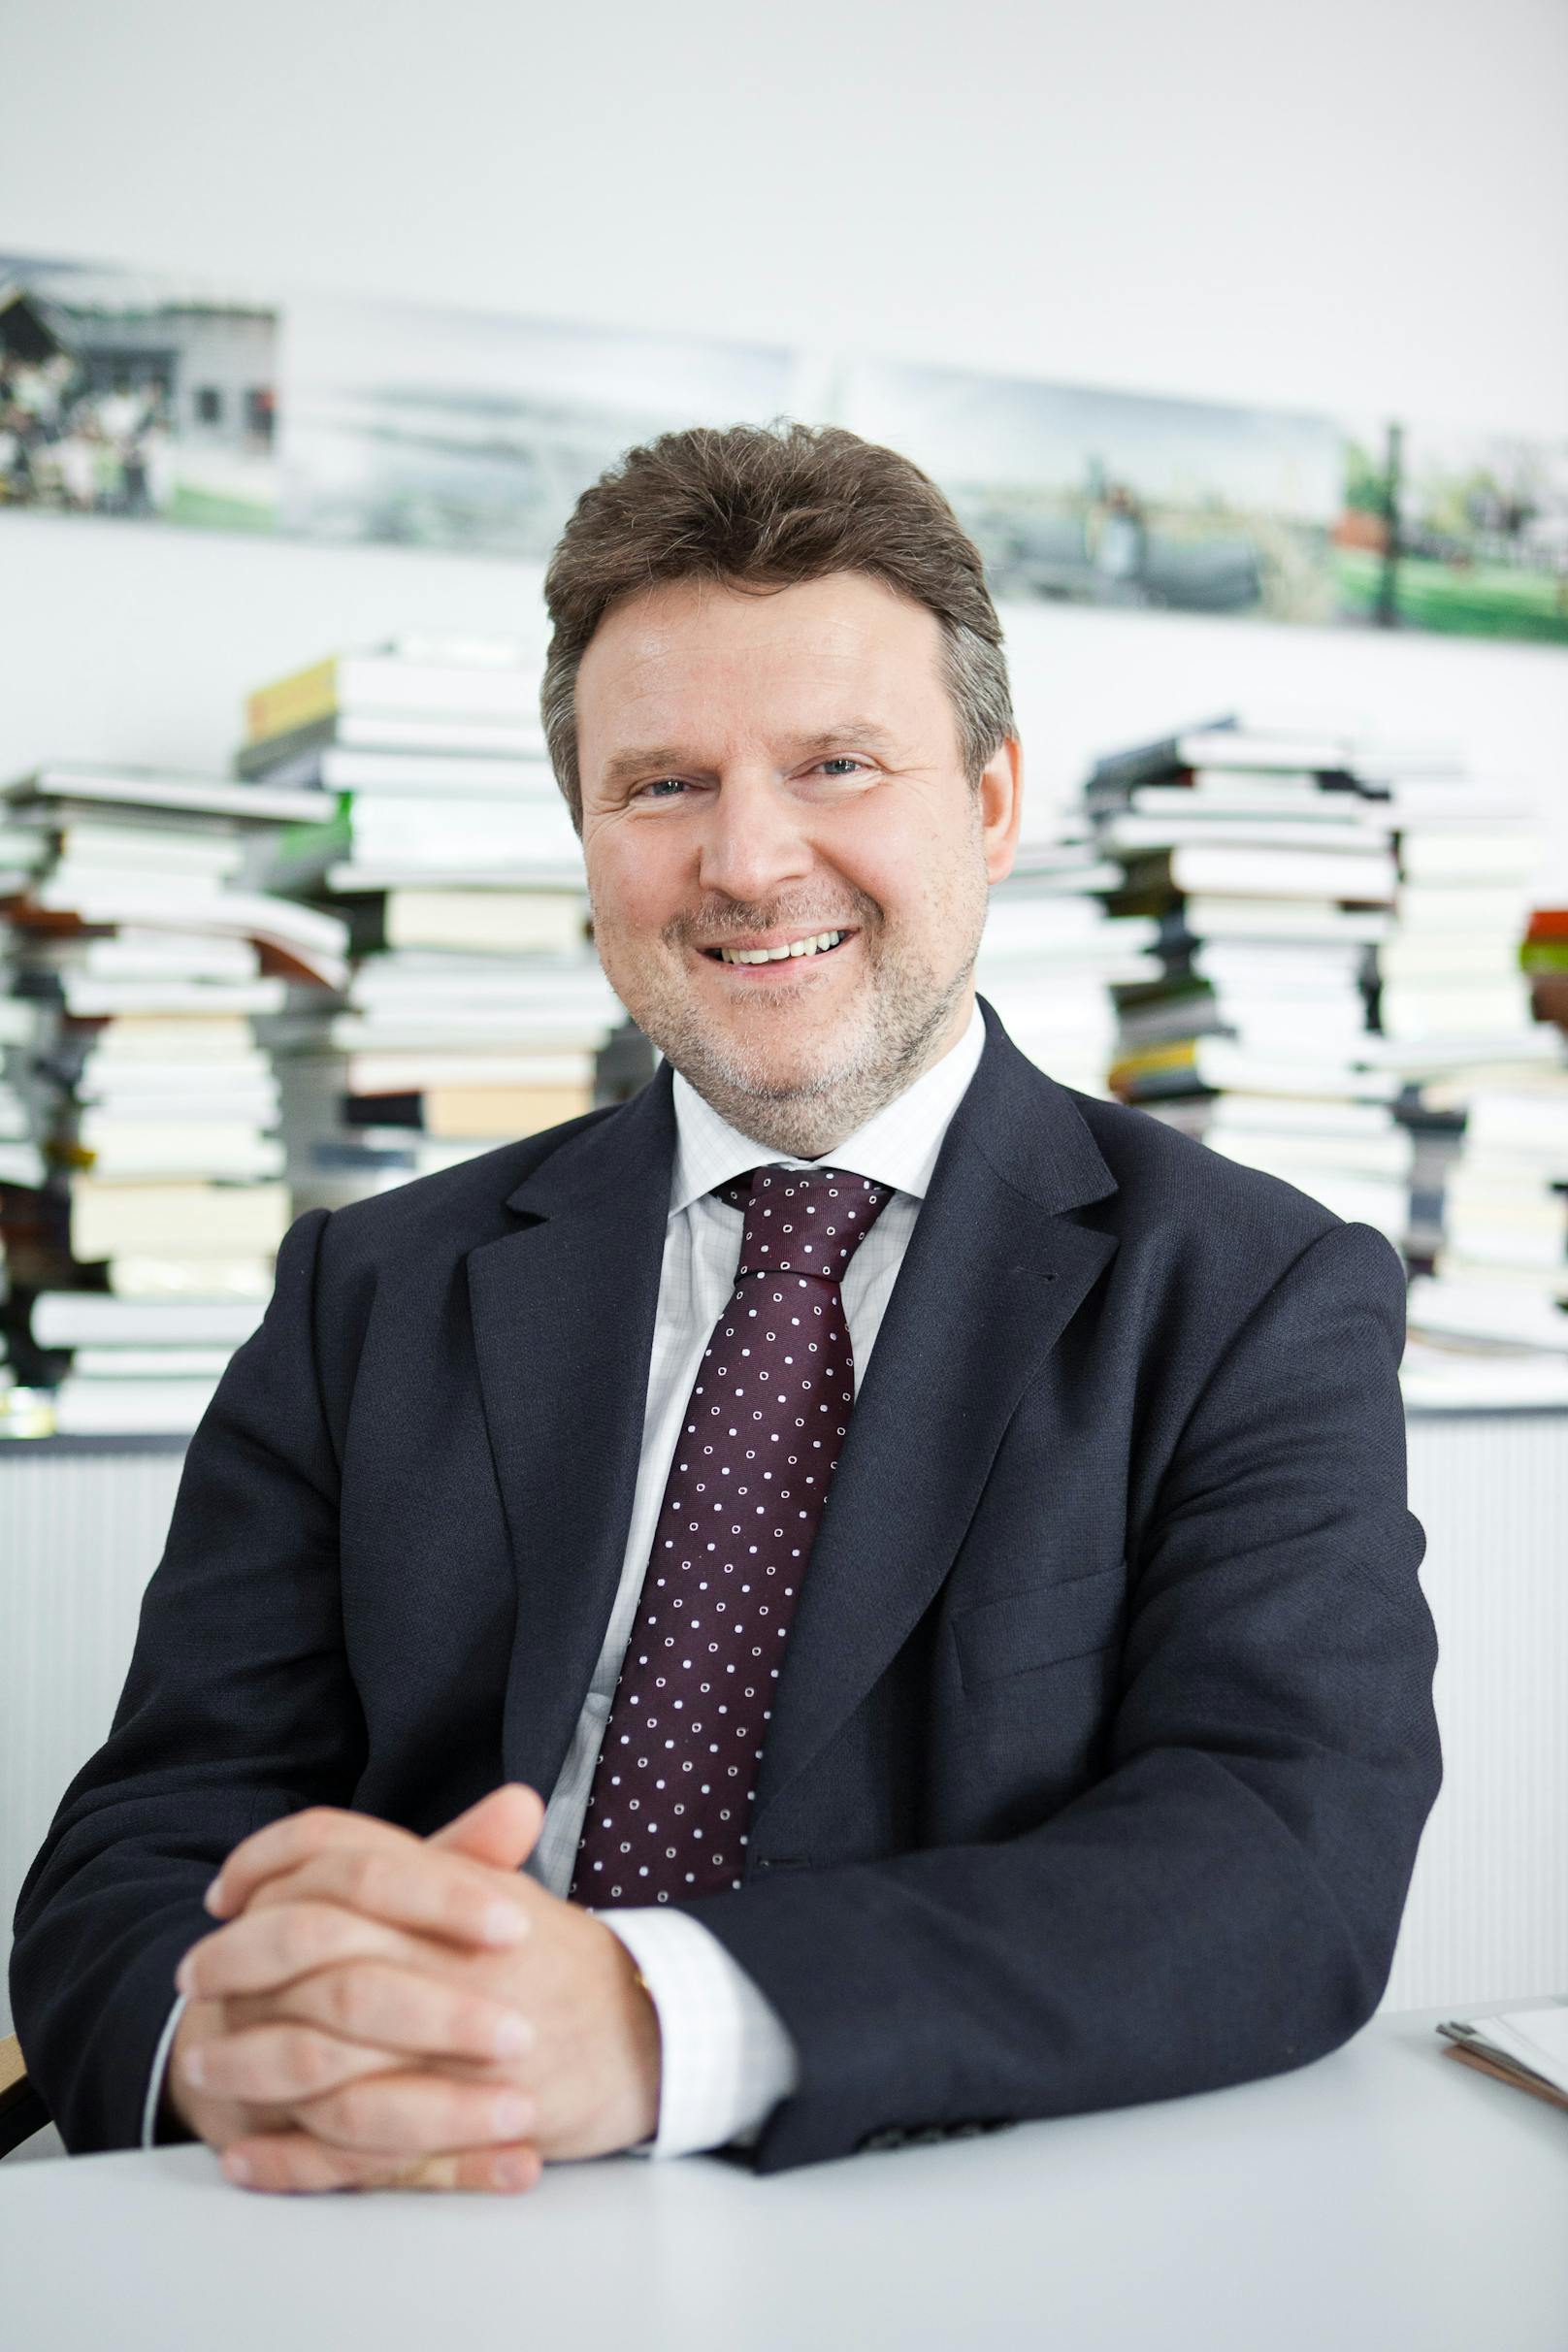 Michael Ludwig ist ein österreichischer Politiker und seit 24. Mai 2018 Bürgermeister und Landeshauptmann von Wien.